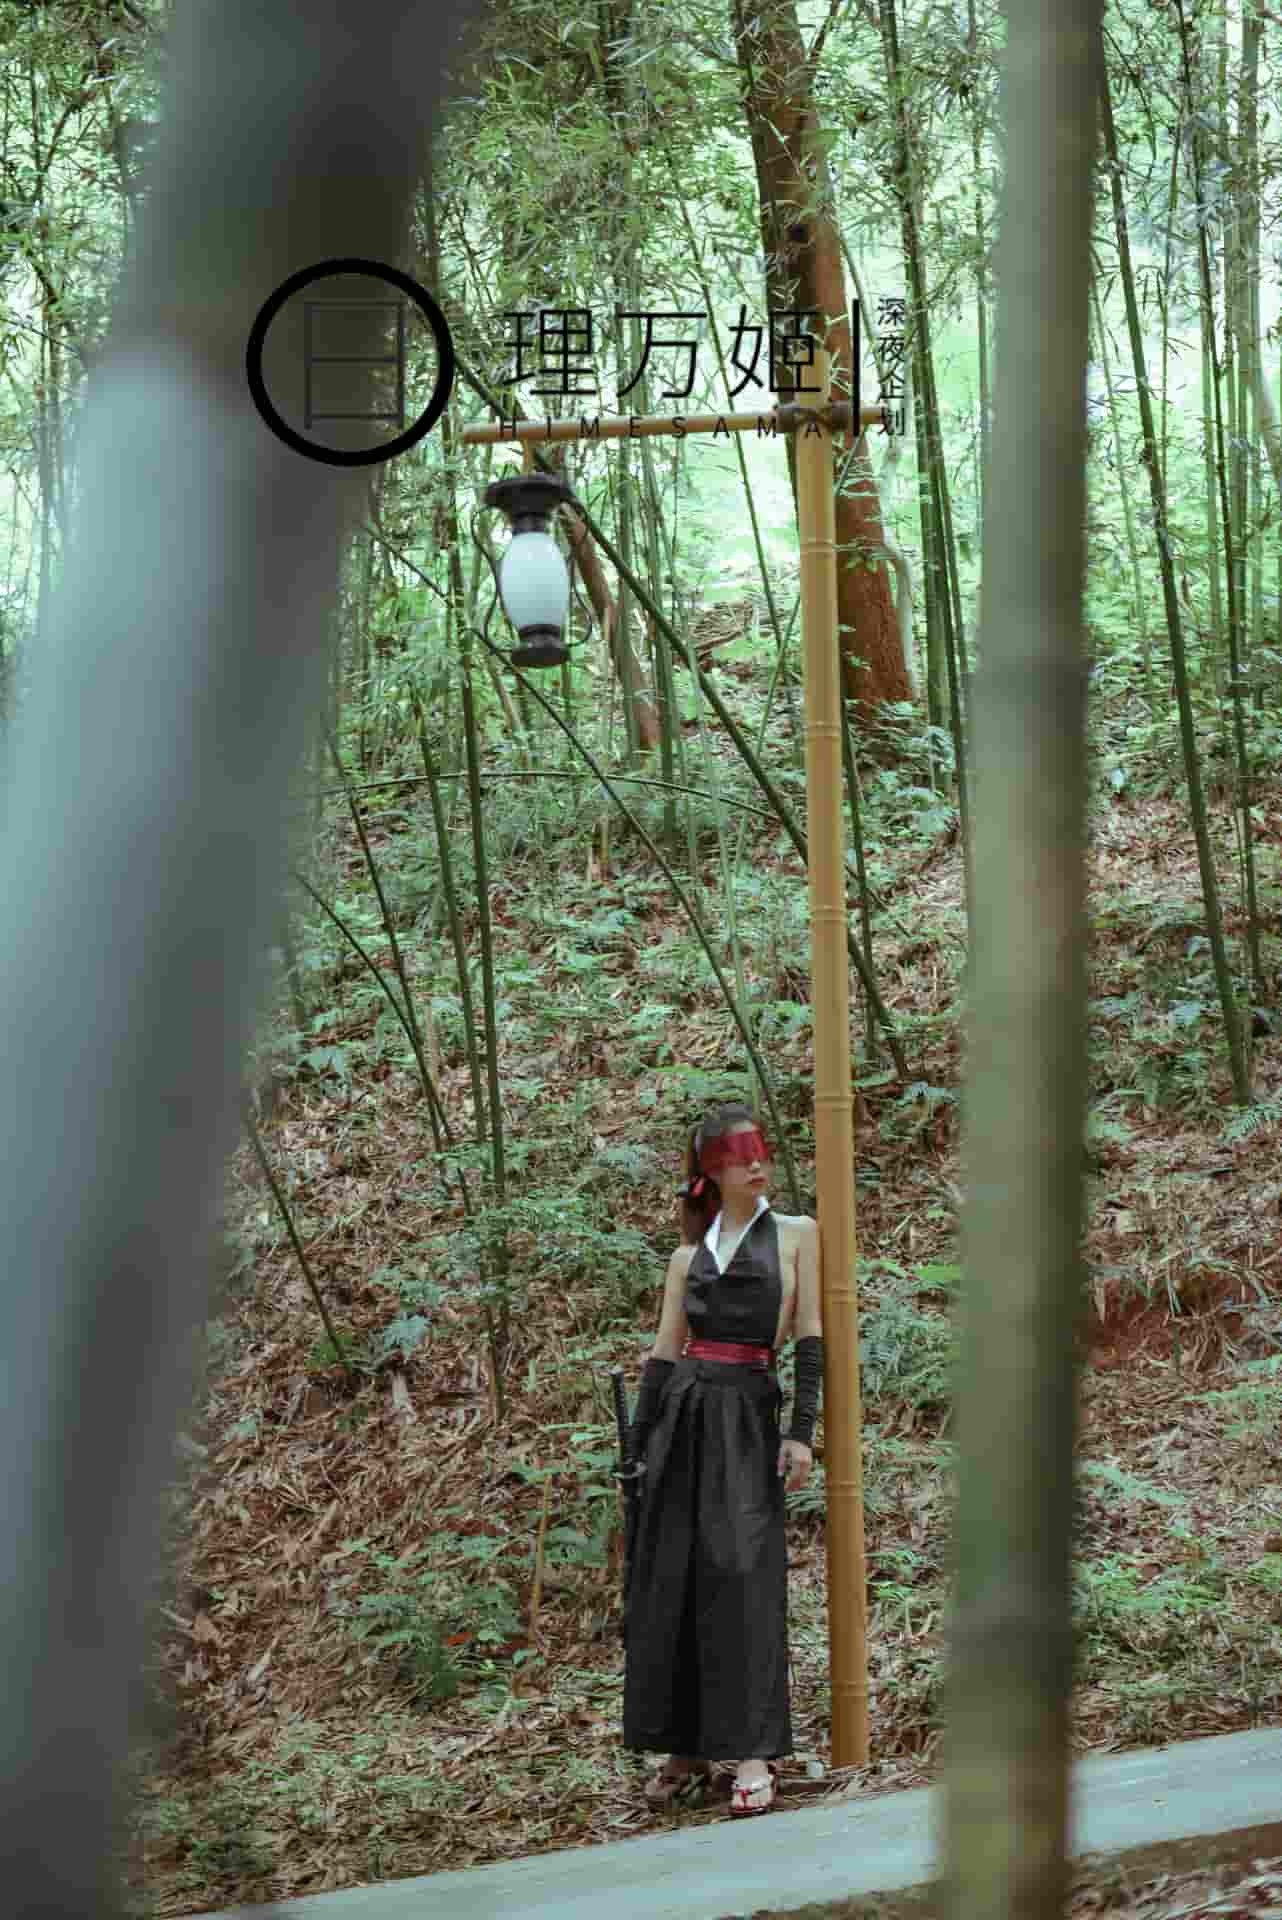 Ливанджи – Не беда! Женщина-воин разоблачена в бамбуковом лесу, и ее запрет 0 снят.